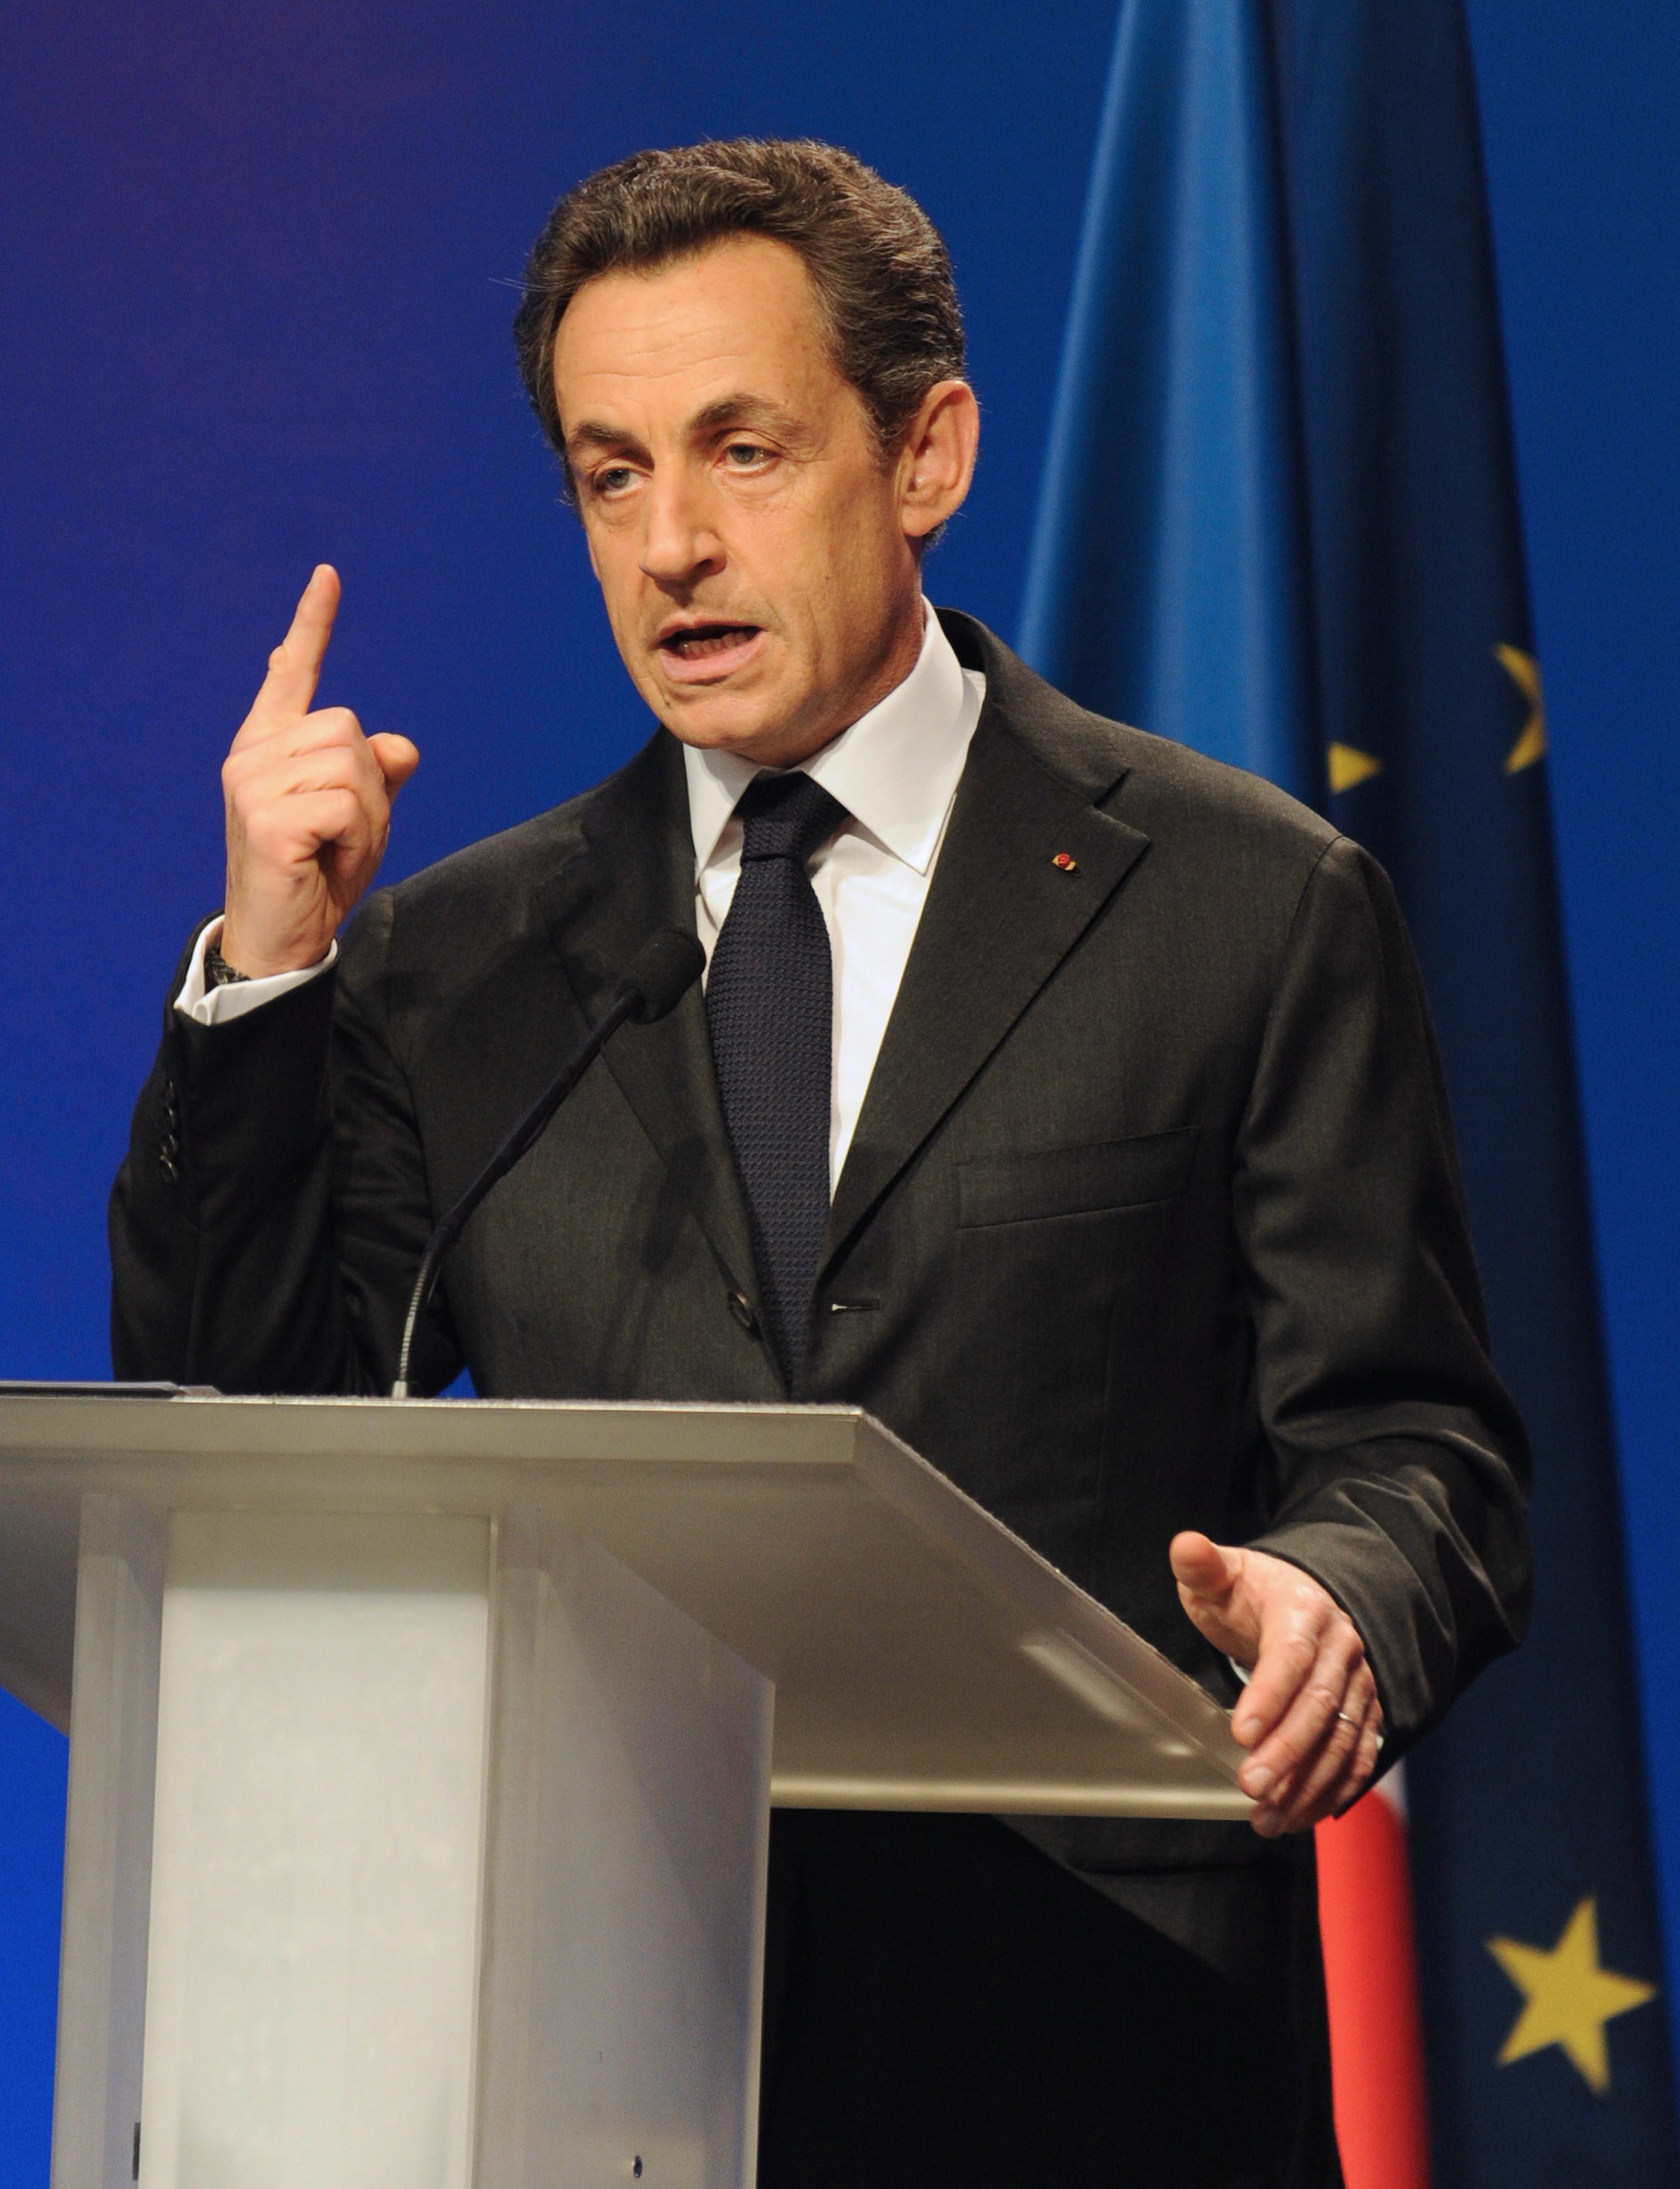 Никола Саркози е решил да предложи на французите нов политически избор